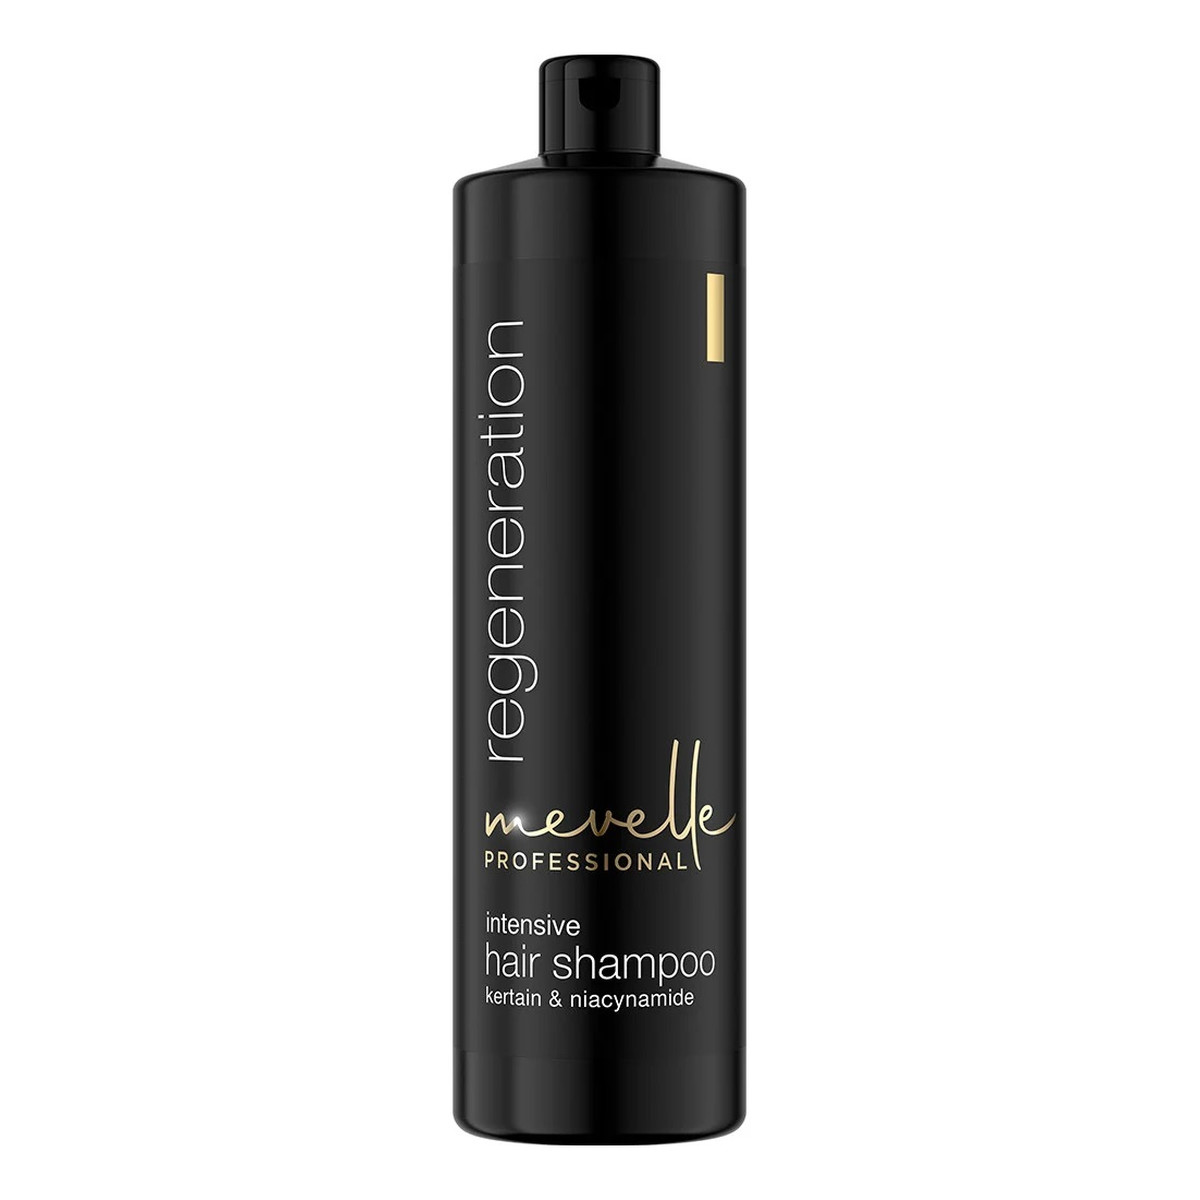 Mevelle Professional Regeneration intensive hair shampoo intensywnie regenerujący szampon do włosów 900ml